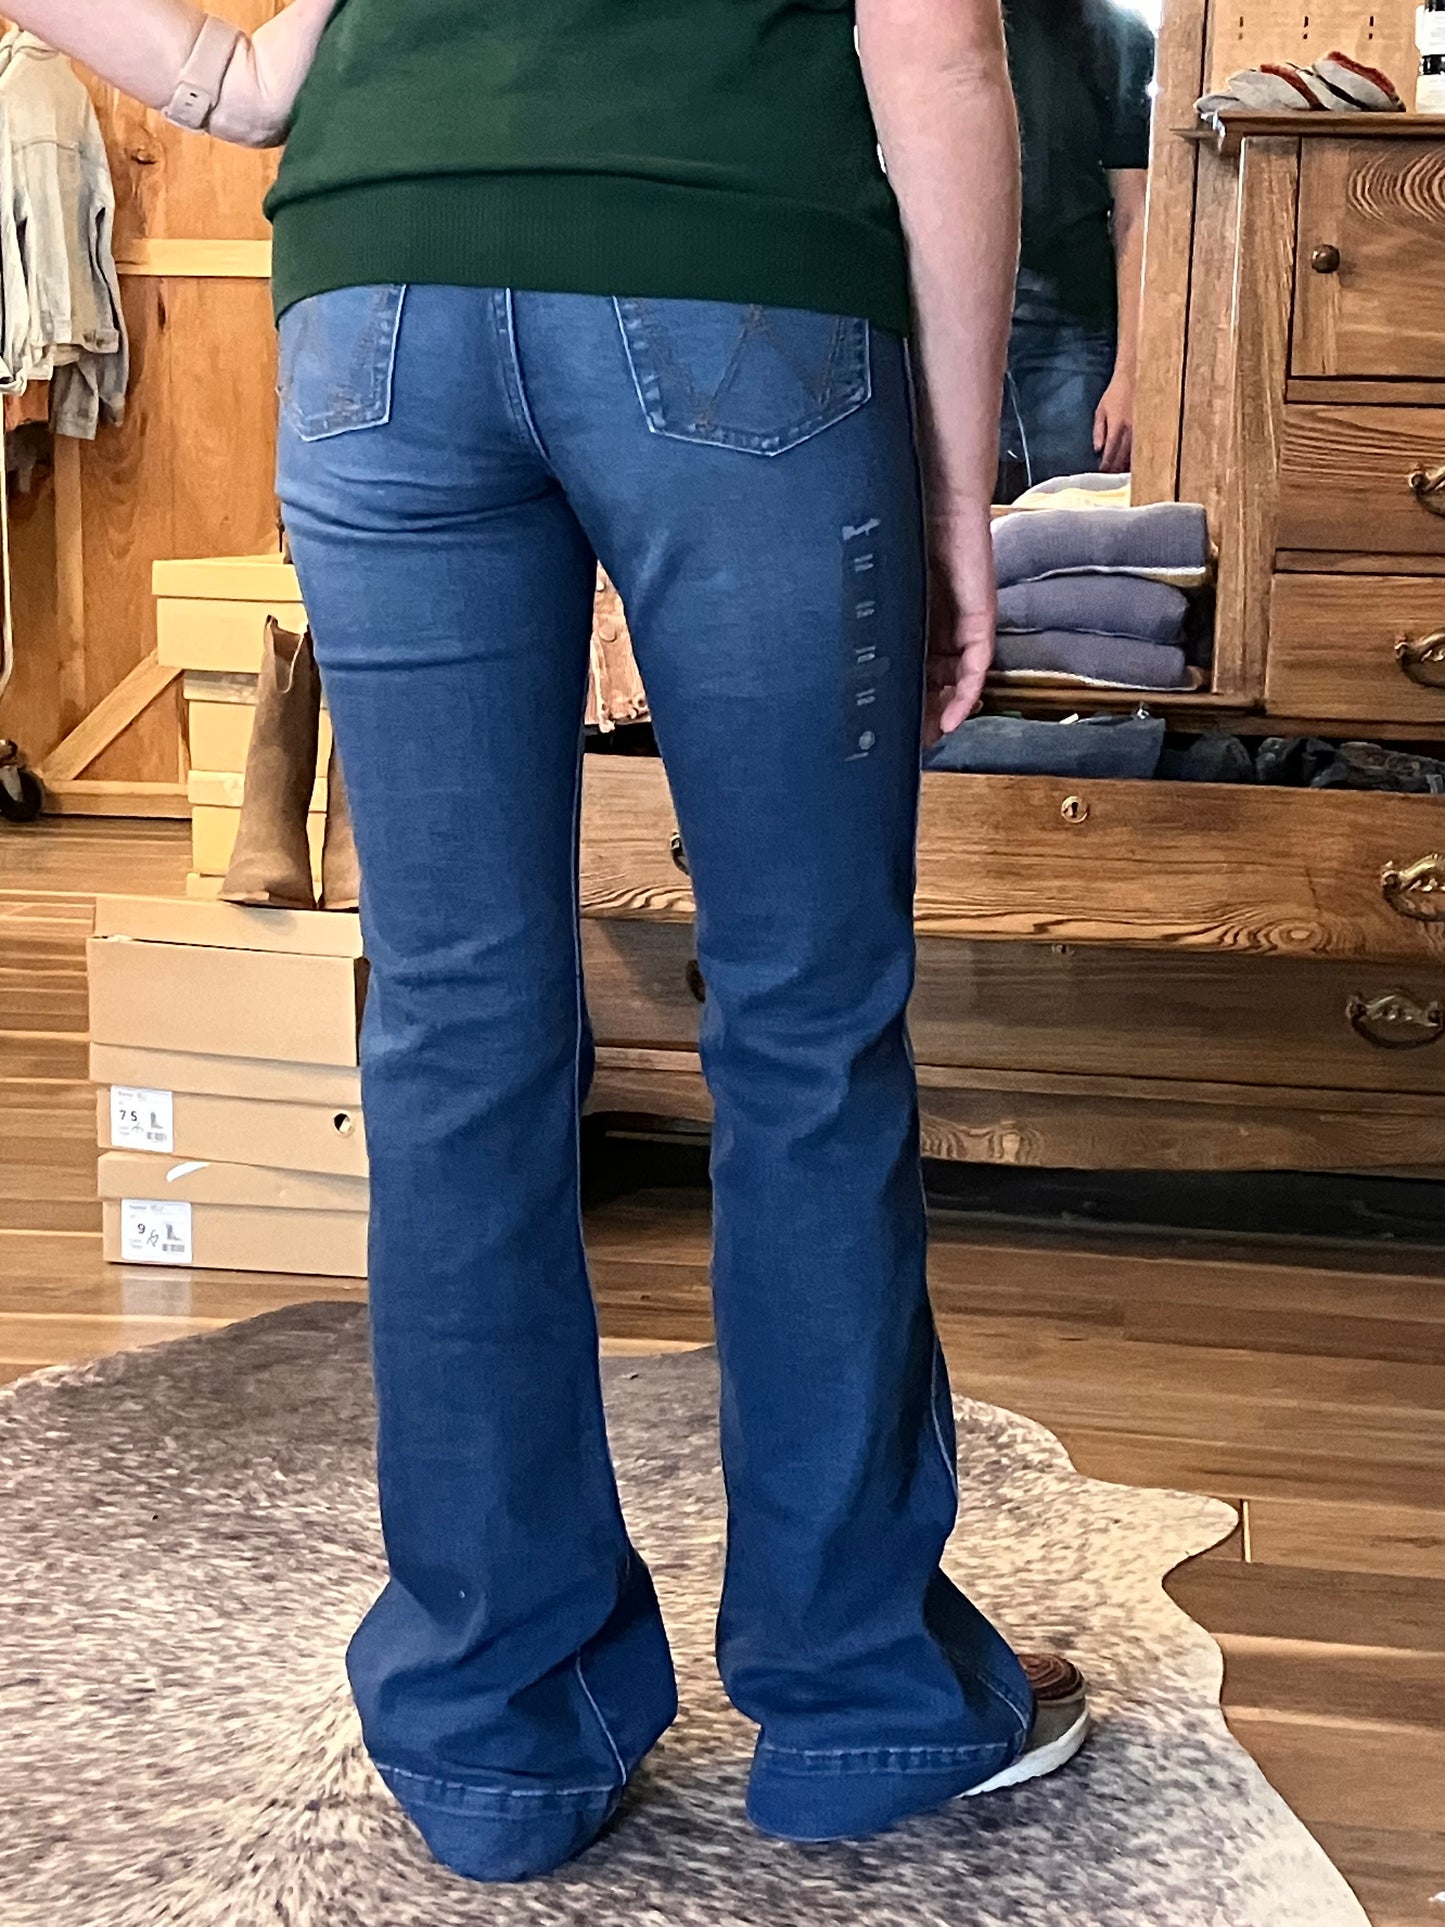 Wrangler Retro Premium Trouser Jeans - Long inseam